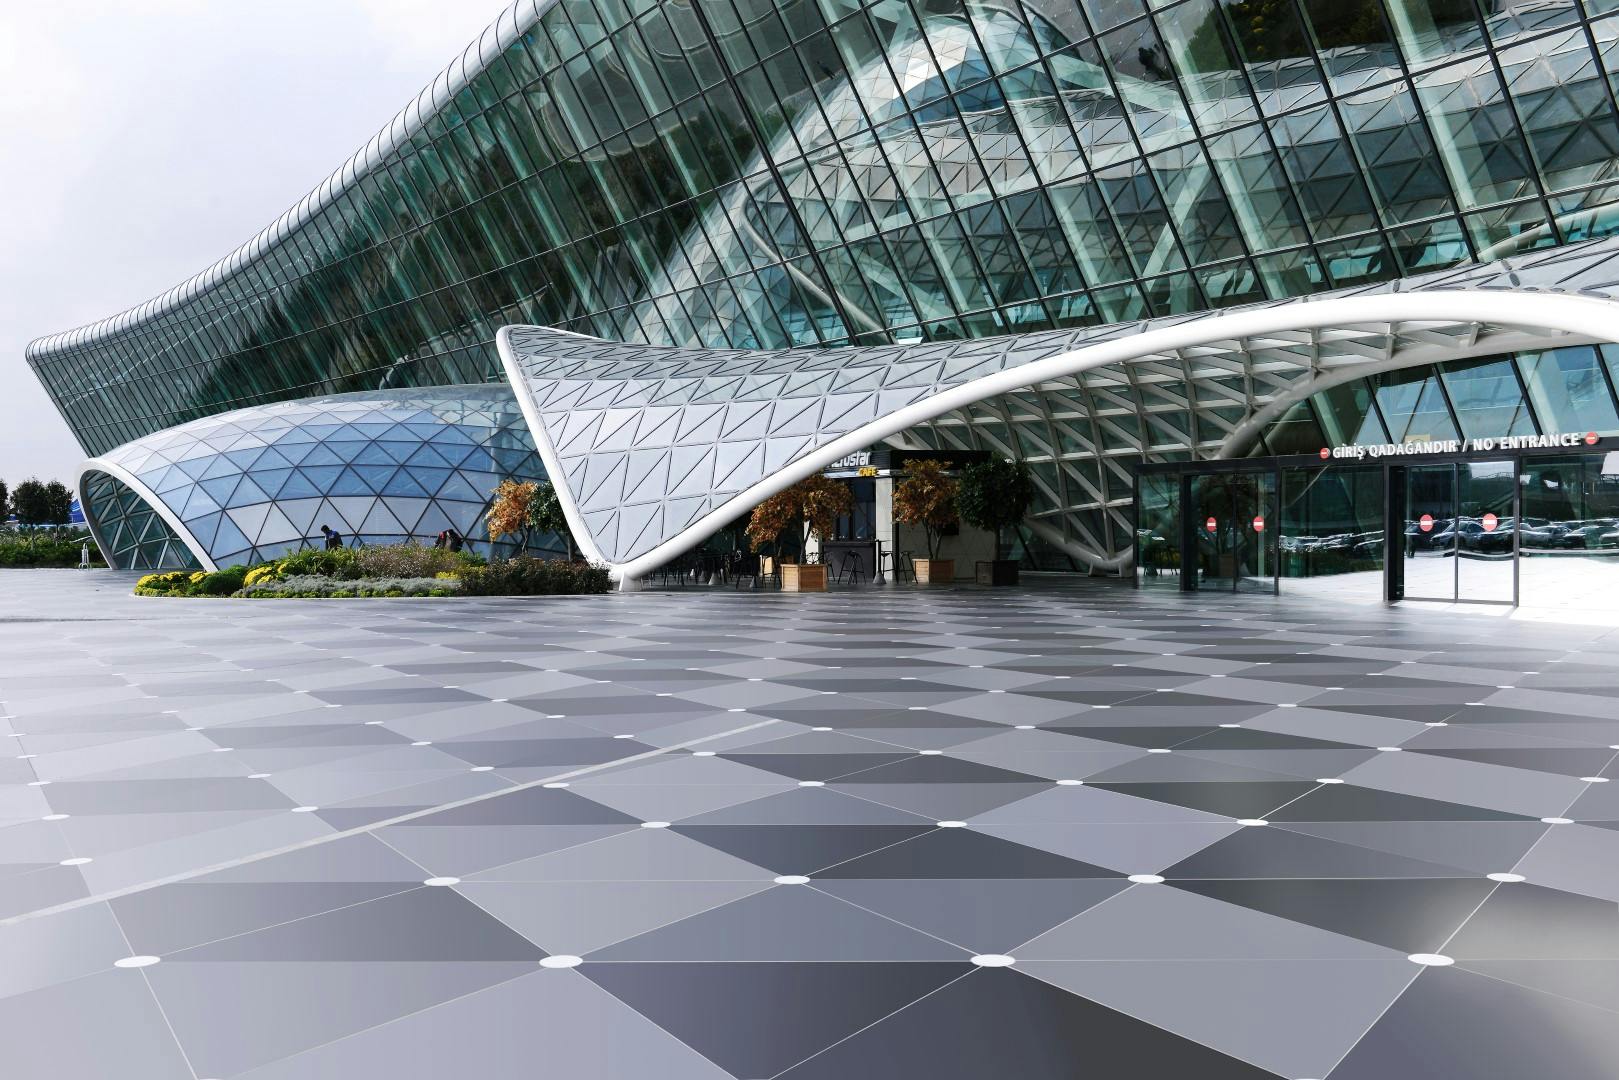 Numéro d'image 231 de la section actuelle de Baku Airport - Página 2 de 3 de Cosentino Canada